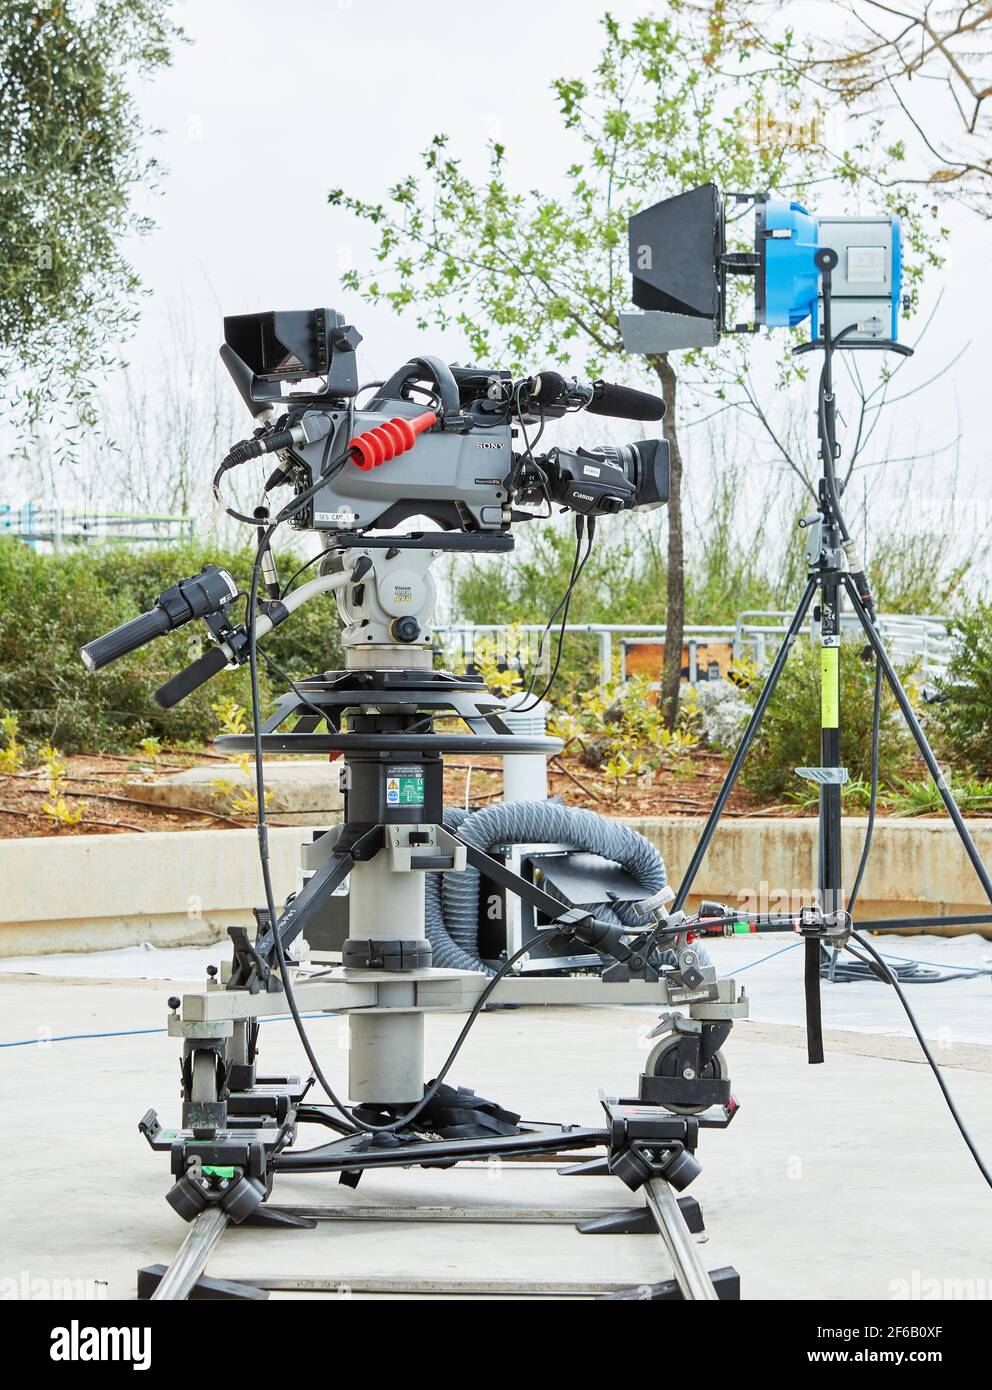 Equipo profesional para grabar programas de televisión y películas. Una cámara  de vídeo en el soporte y un dispositivo de iluminación Fotografía de stock  - Alamy